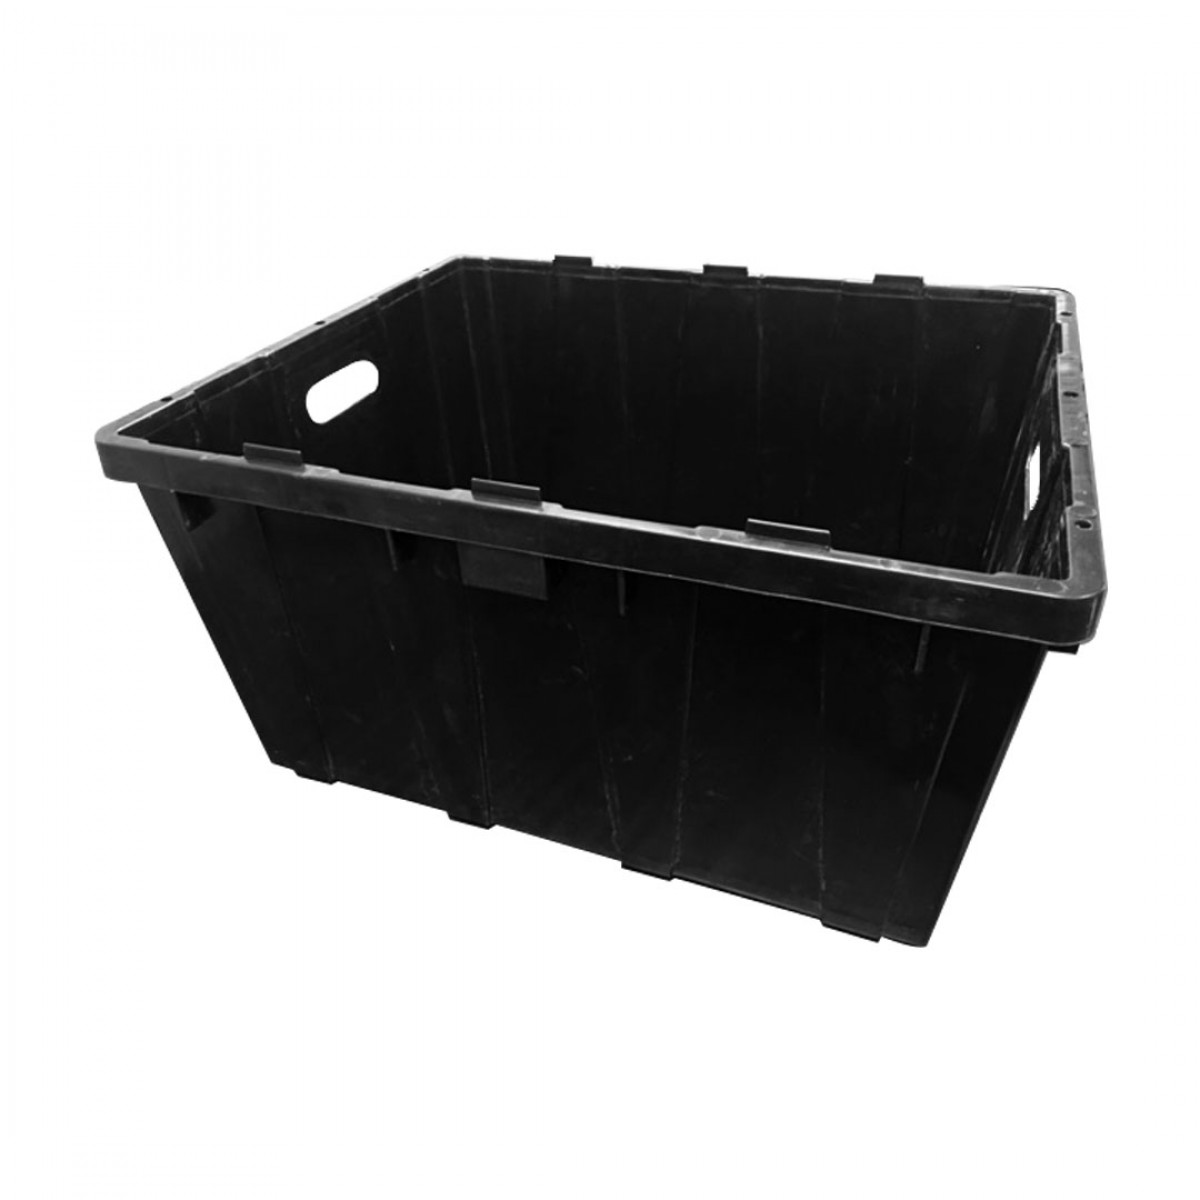 Plastic Bin Box; 23.5" x 19" x 12" (Black) Plastic bins